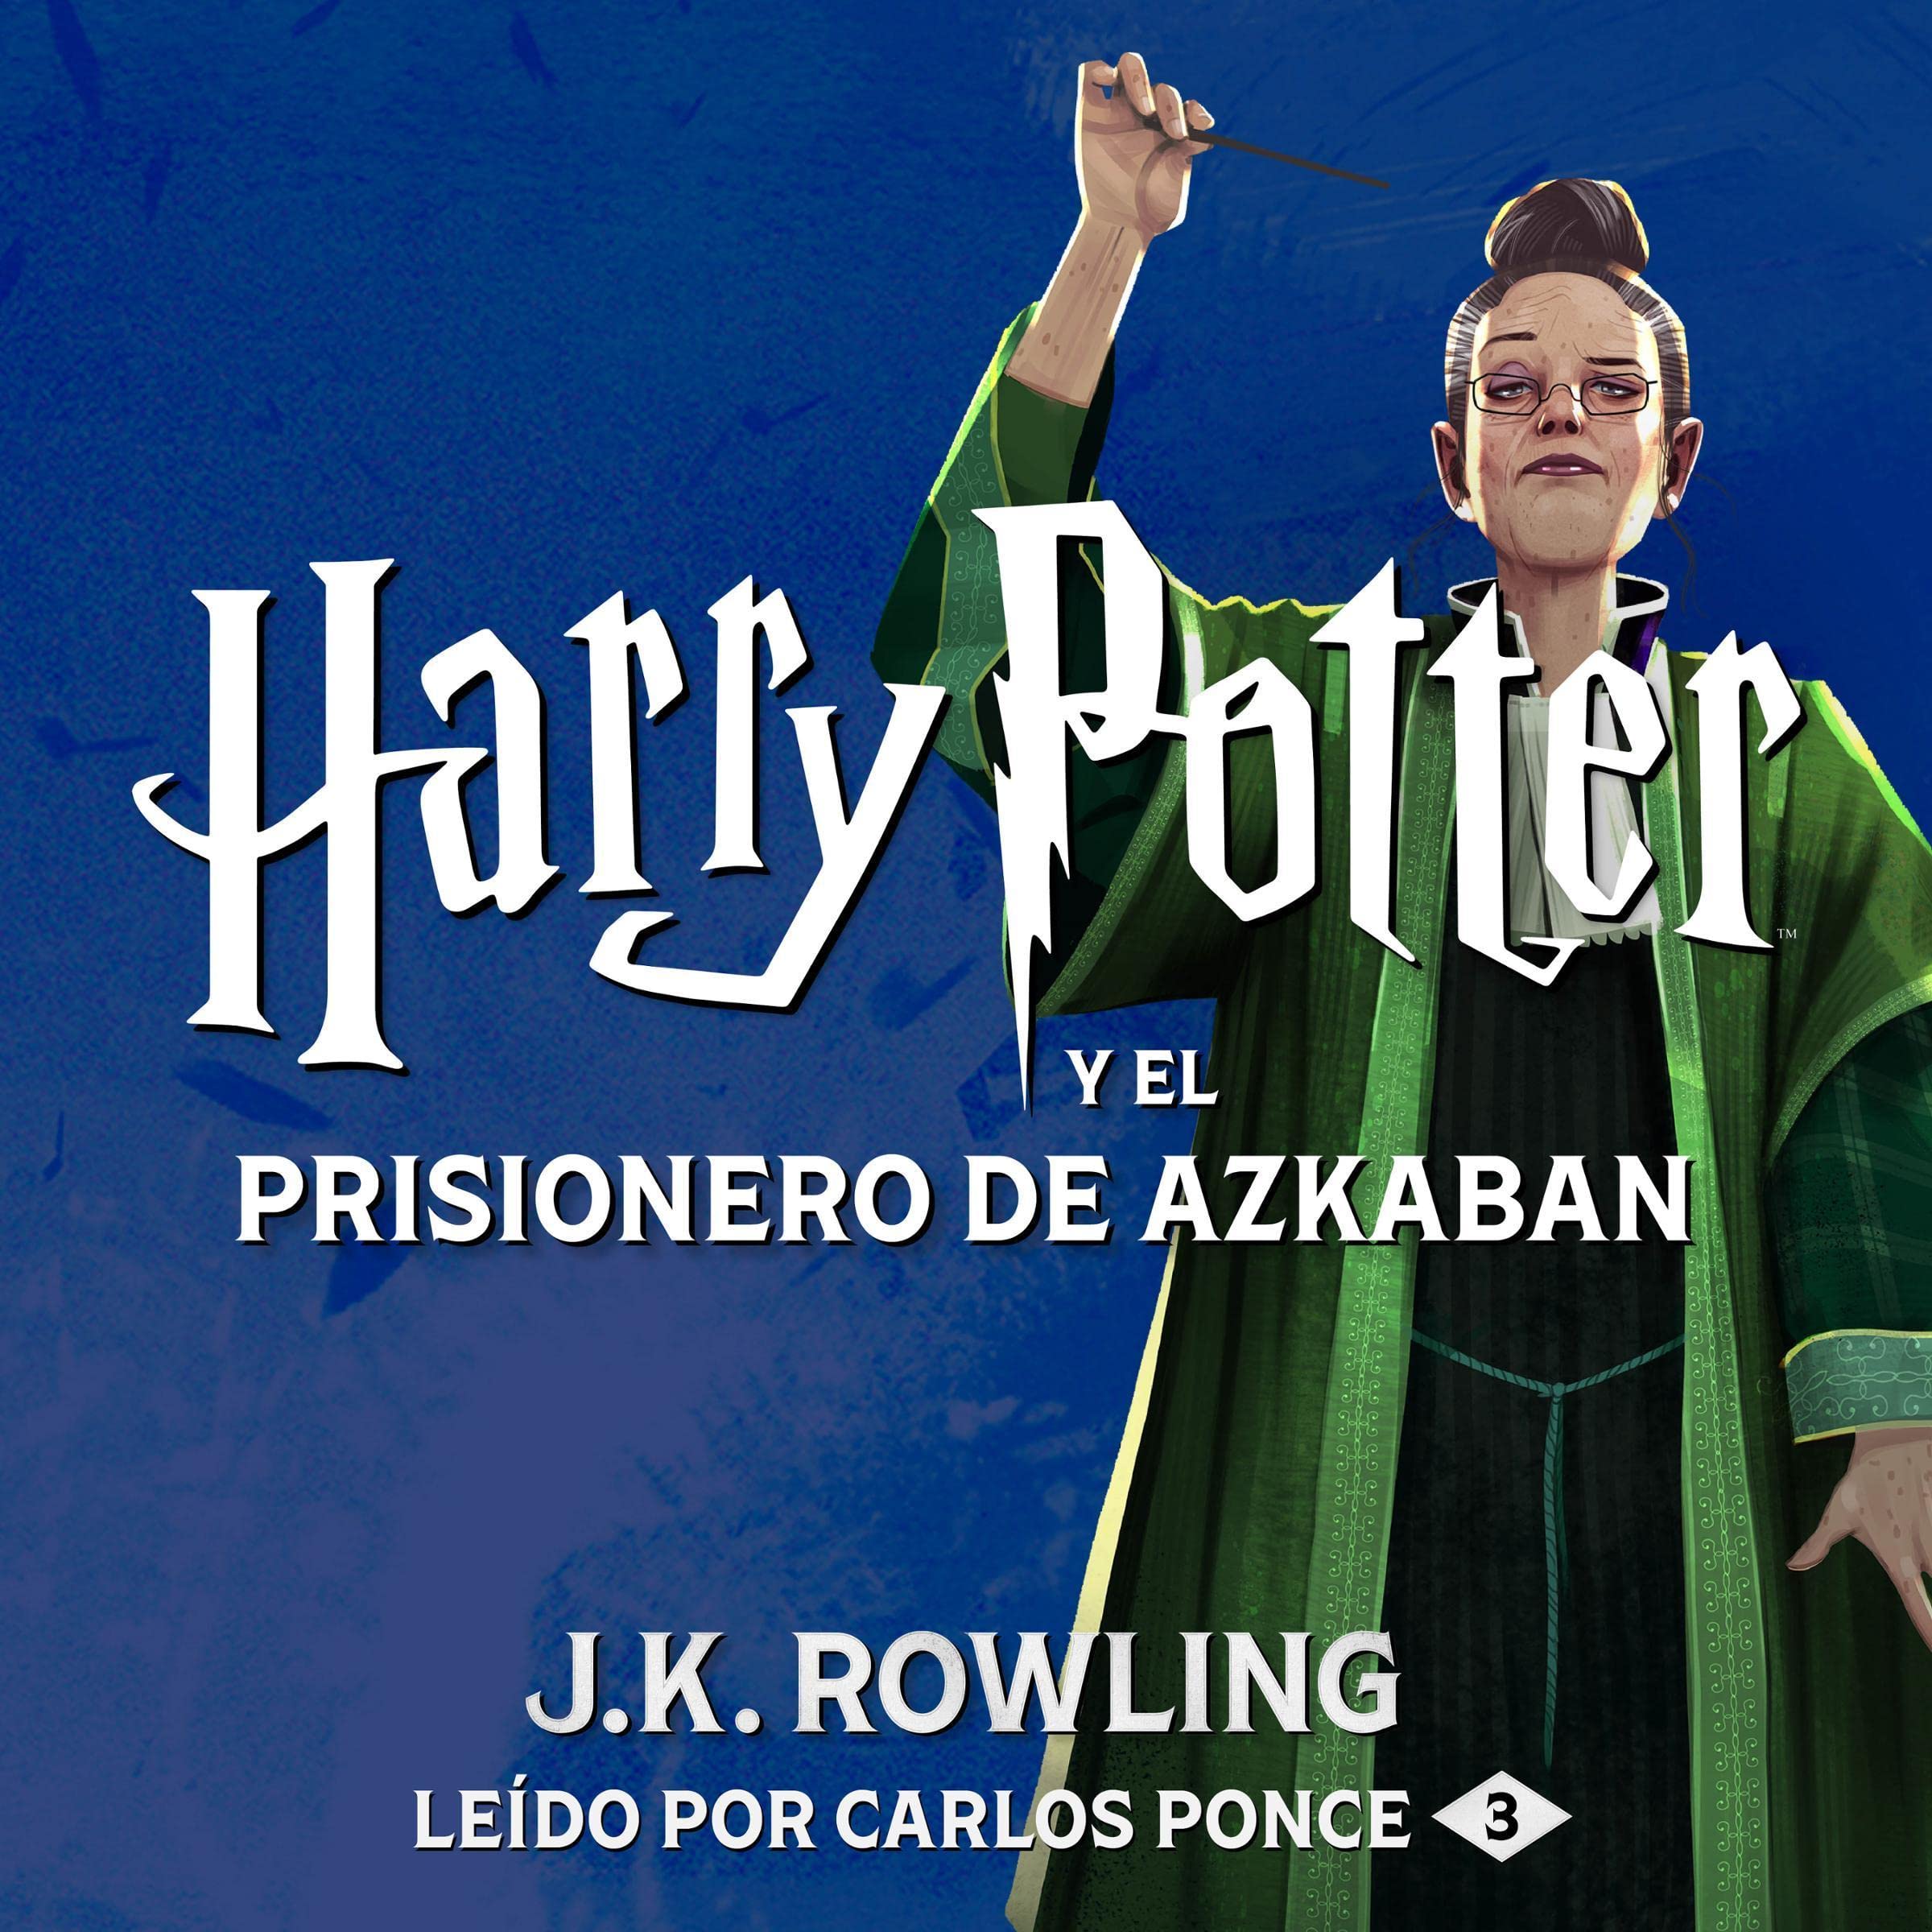 Harry Potter y el prisionero de Azkaban (Harry Potter 3)